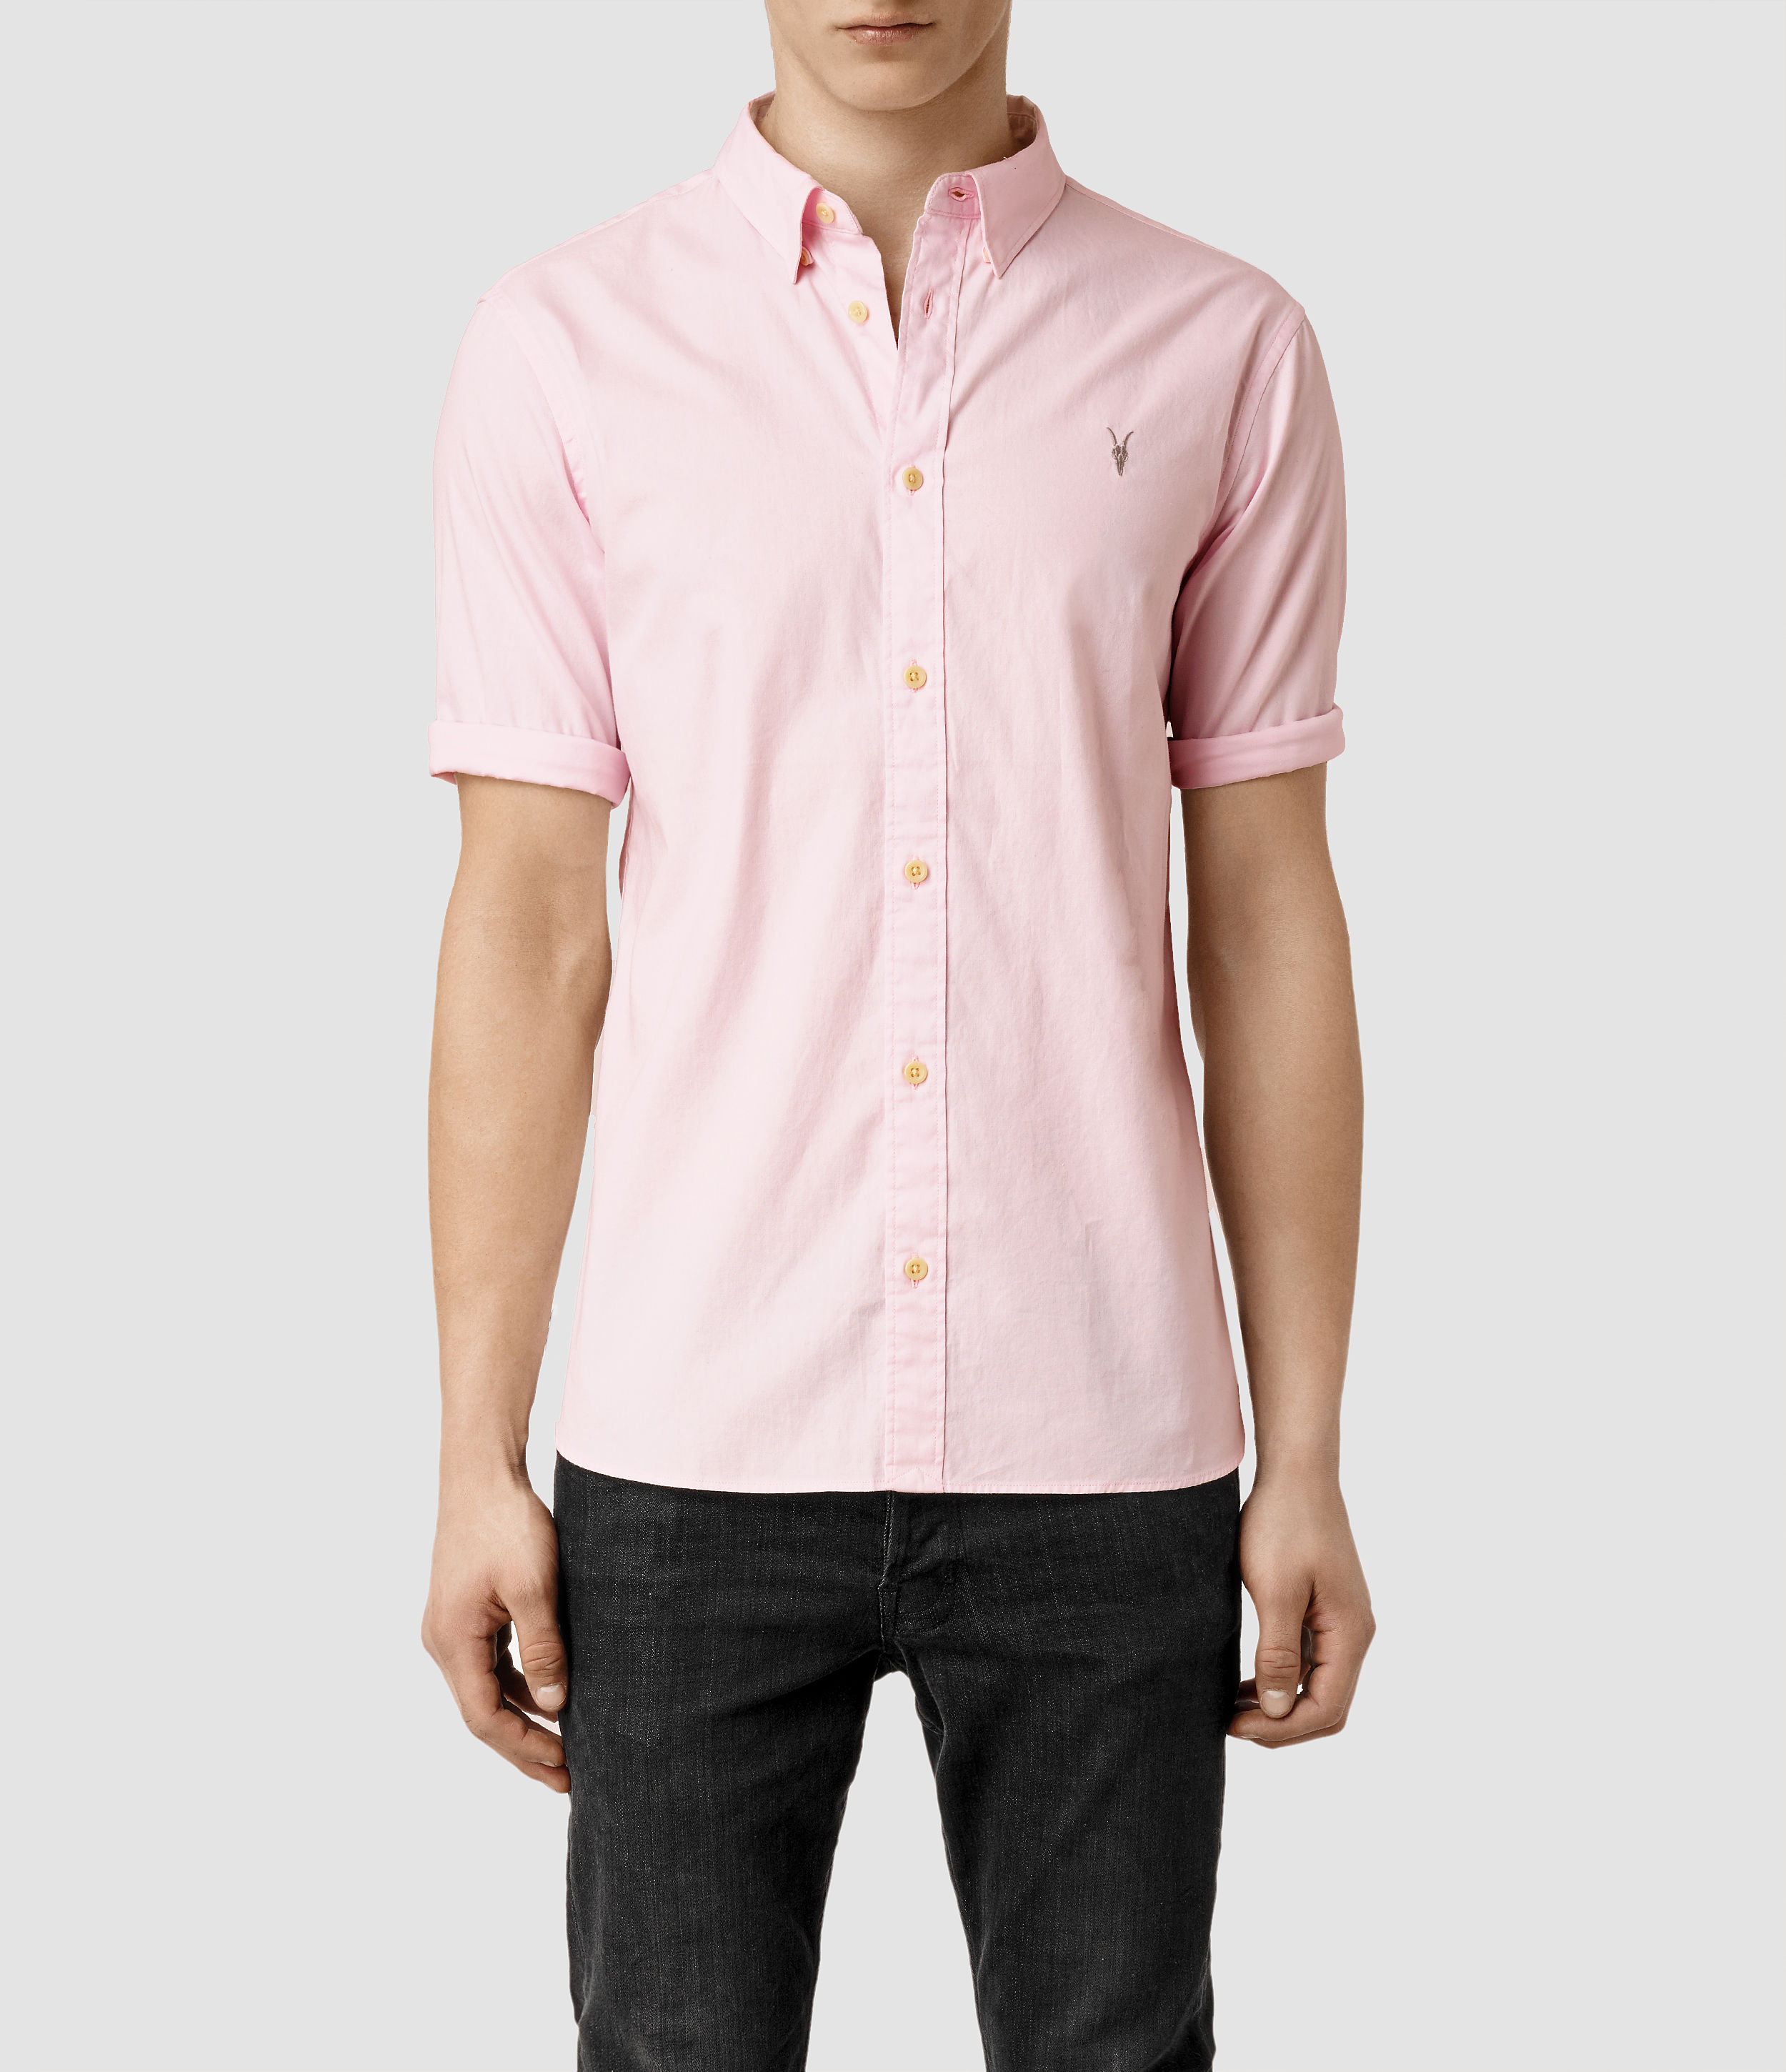 saints pink shirt cheap online